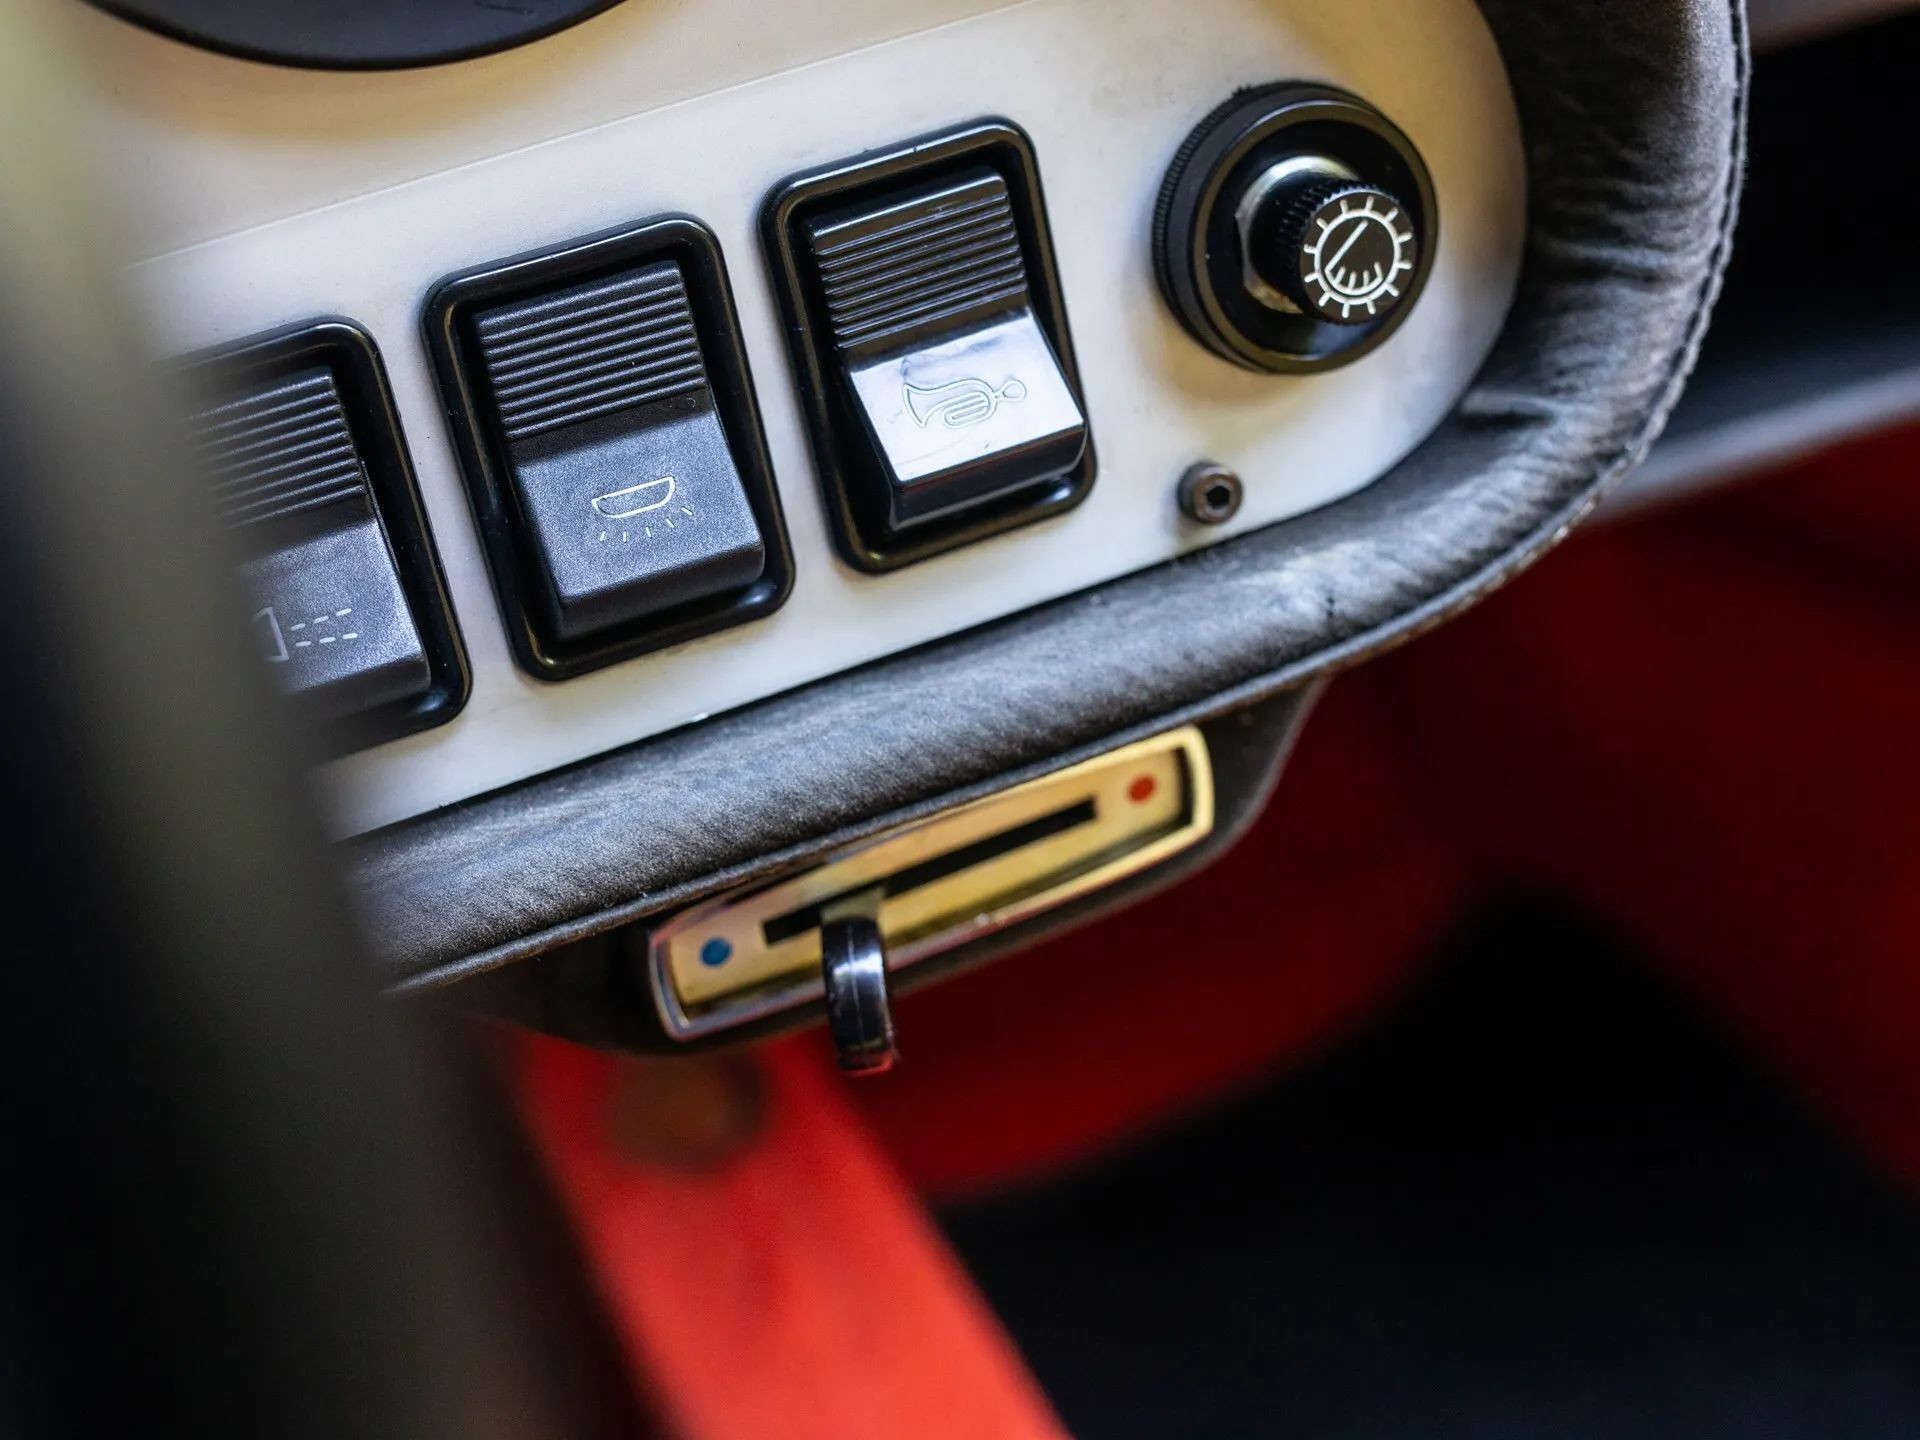 Восстановленный Lancia Stratos HF Stradale - легенда ралли